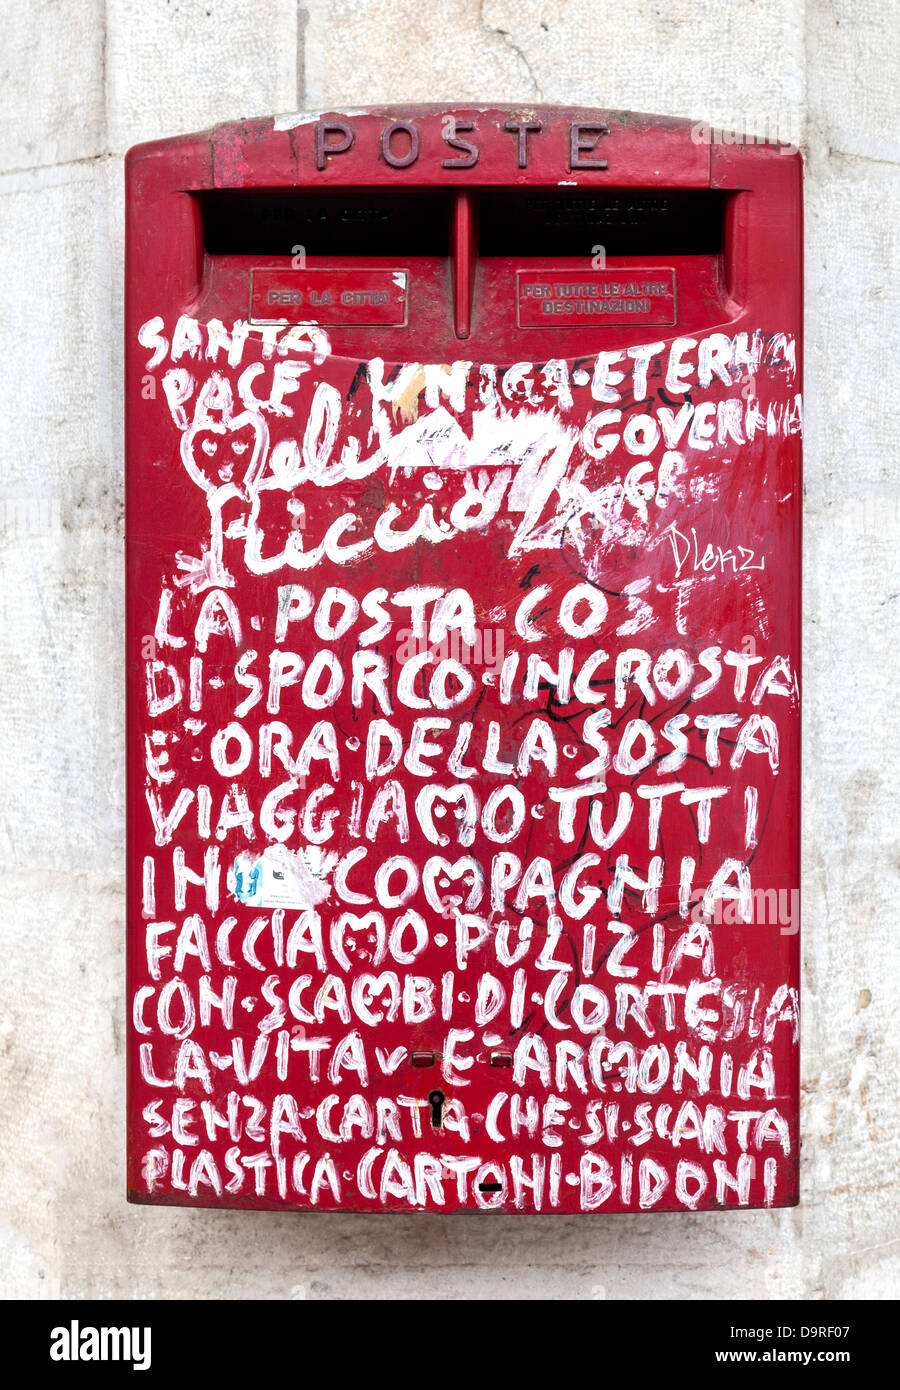 Ancienne boite aux lettres rouge décorée de graffitis Banque D'Images